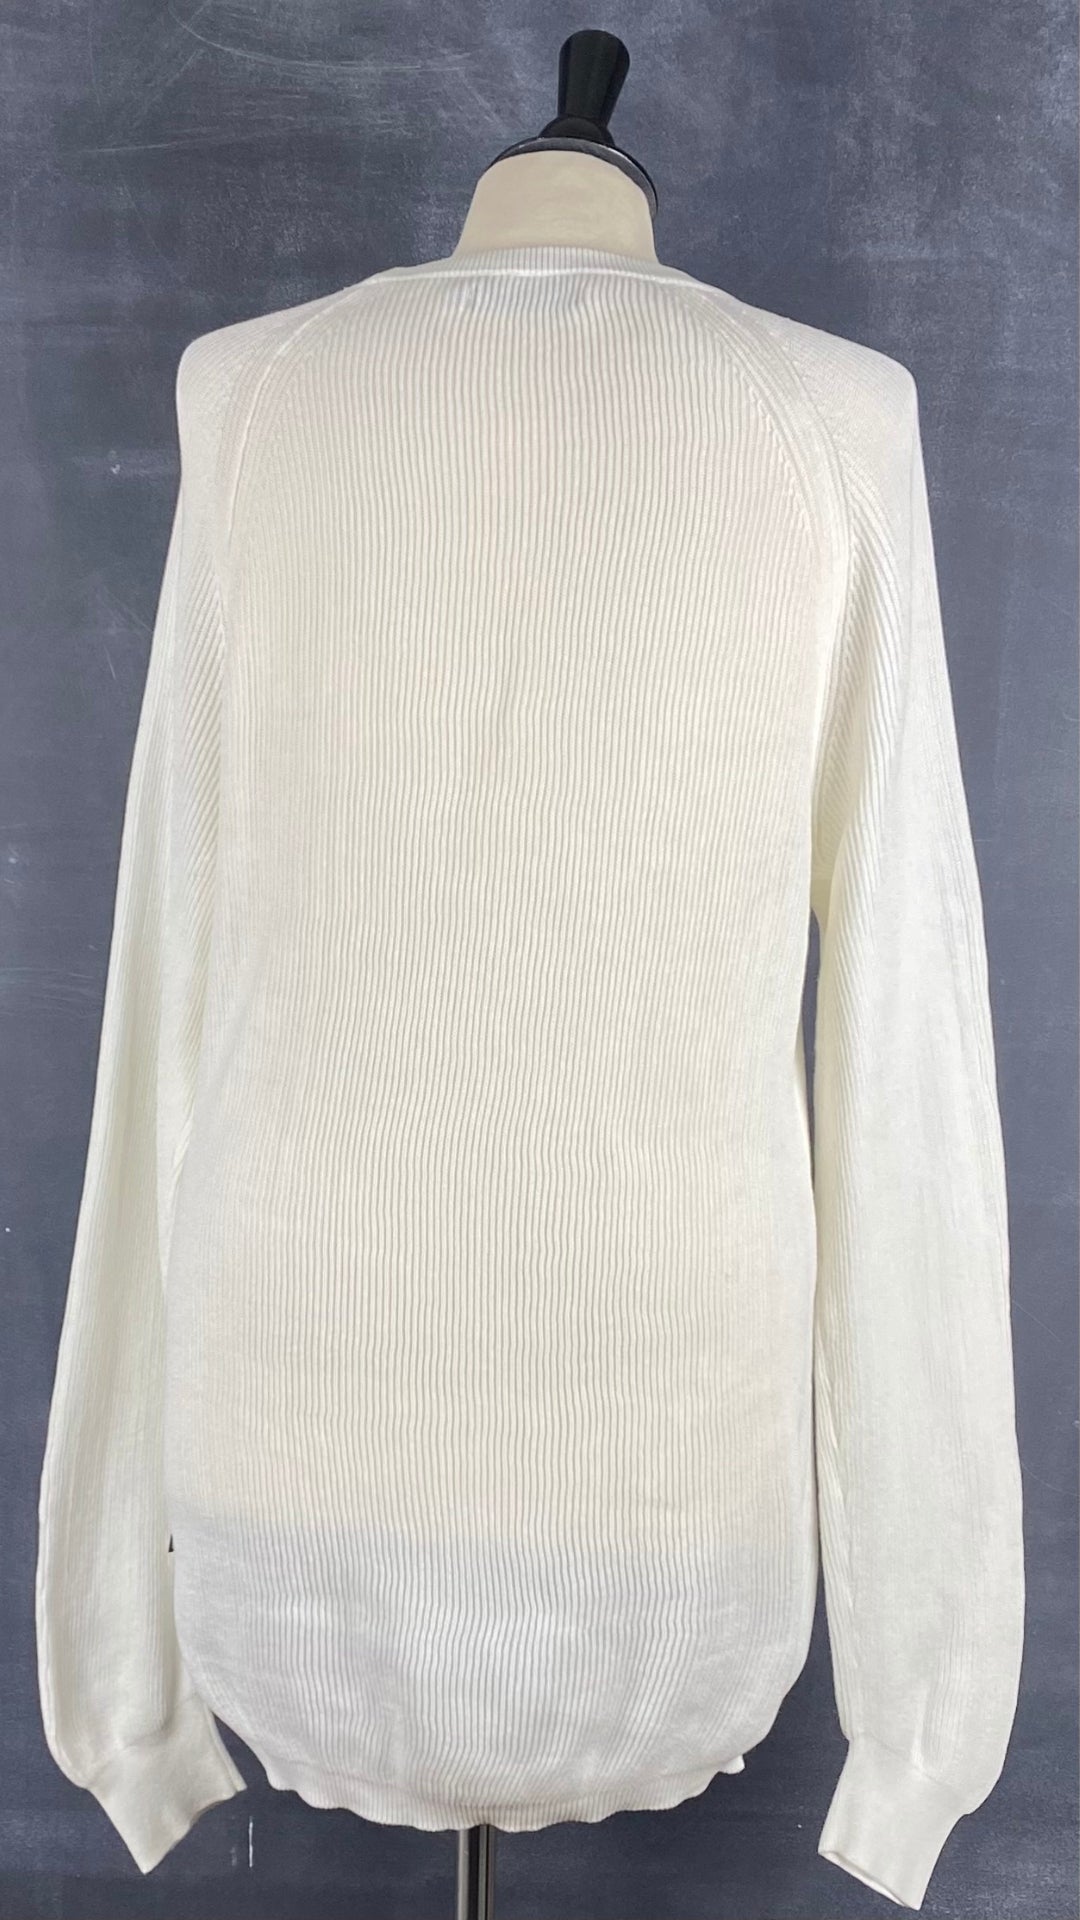 Chandail manche raglan en tricot de coton Matinique, taille xl. Vue de dos.